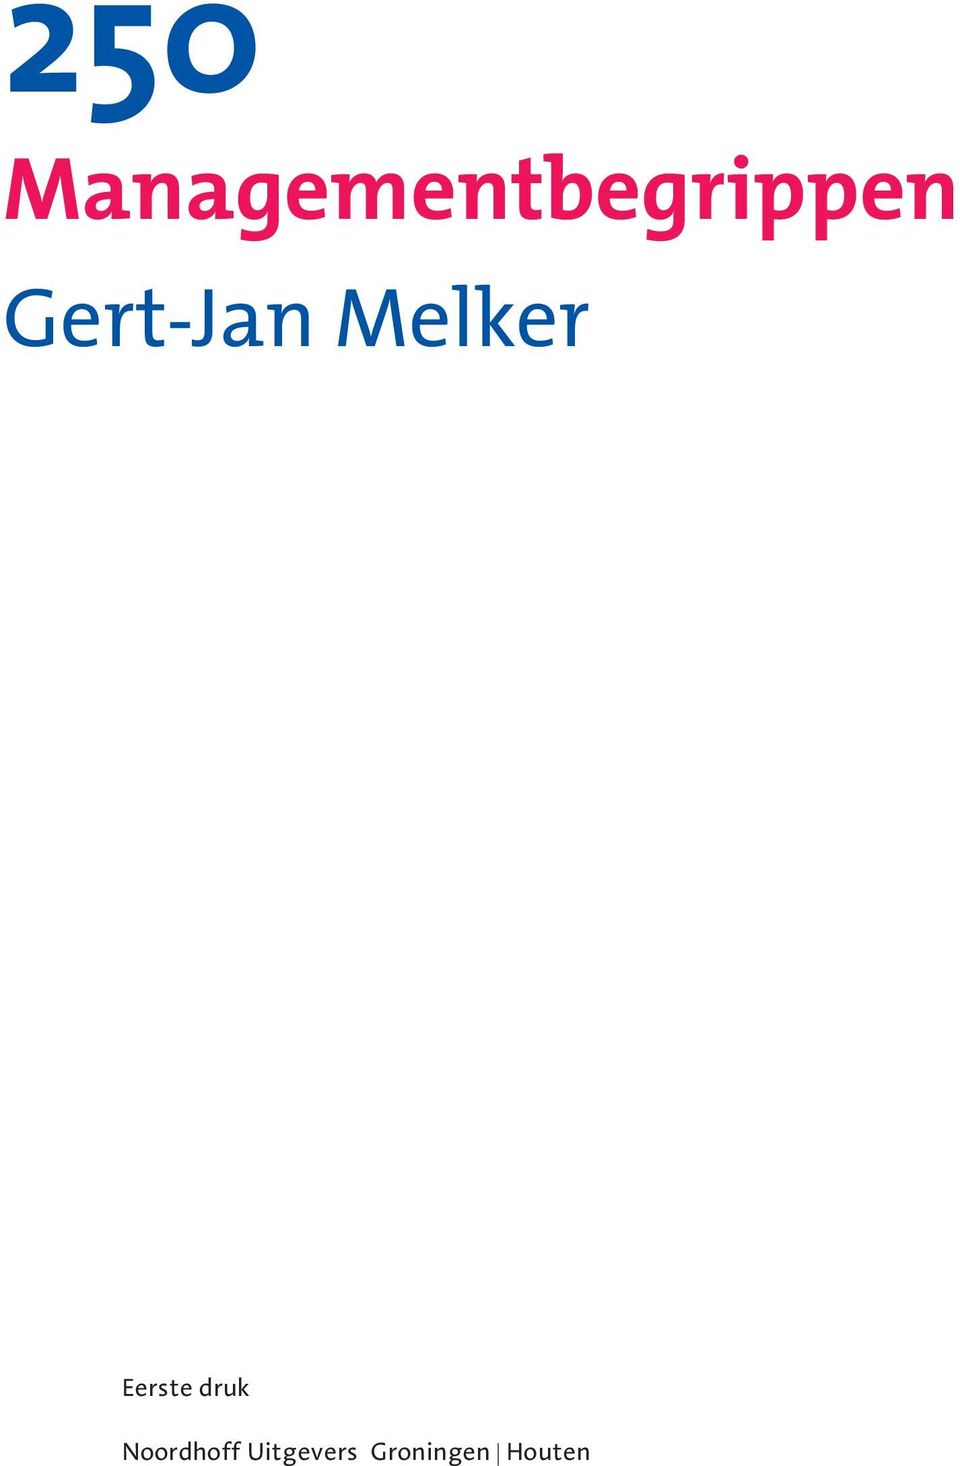 Gert-Jan Melker